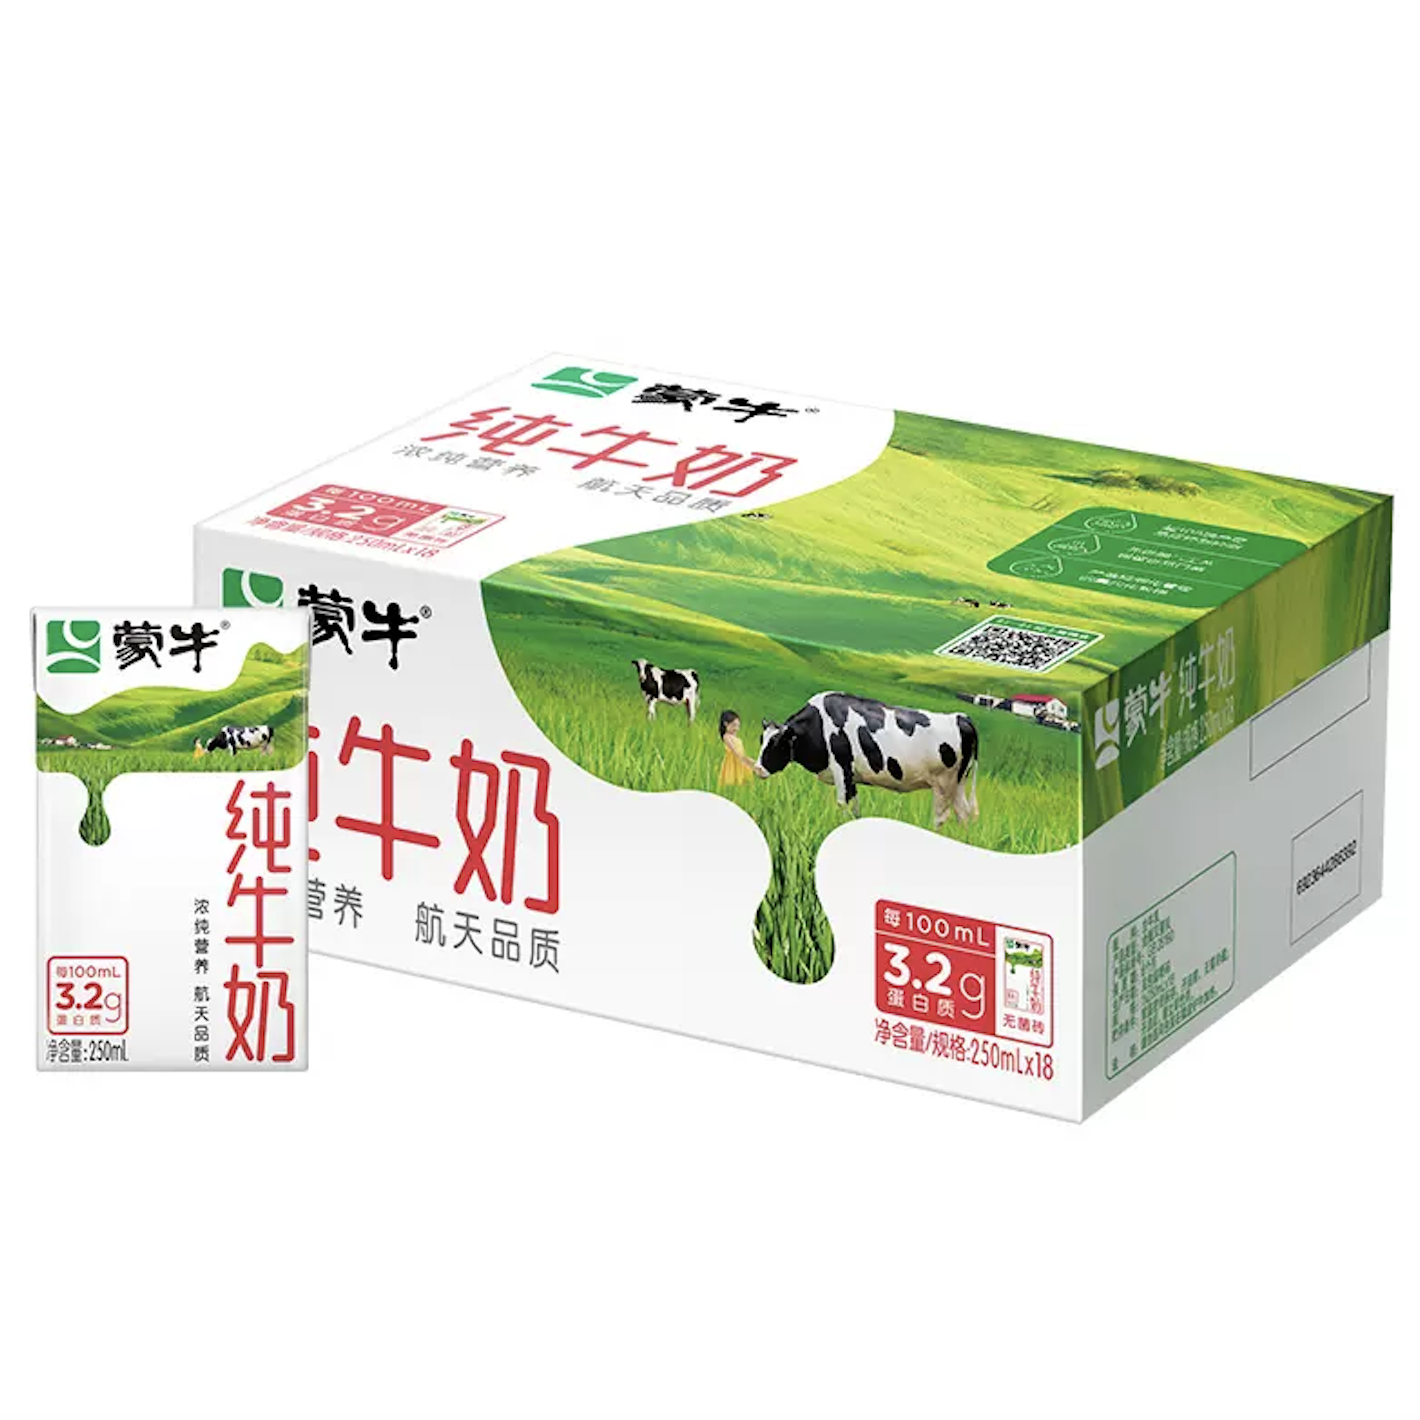 【百亿补贴】日期新鲜 蒙牛纯牛奶全脂乳早餐250ml×18包整箱 33.9元